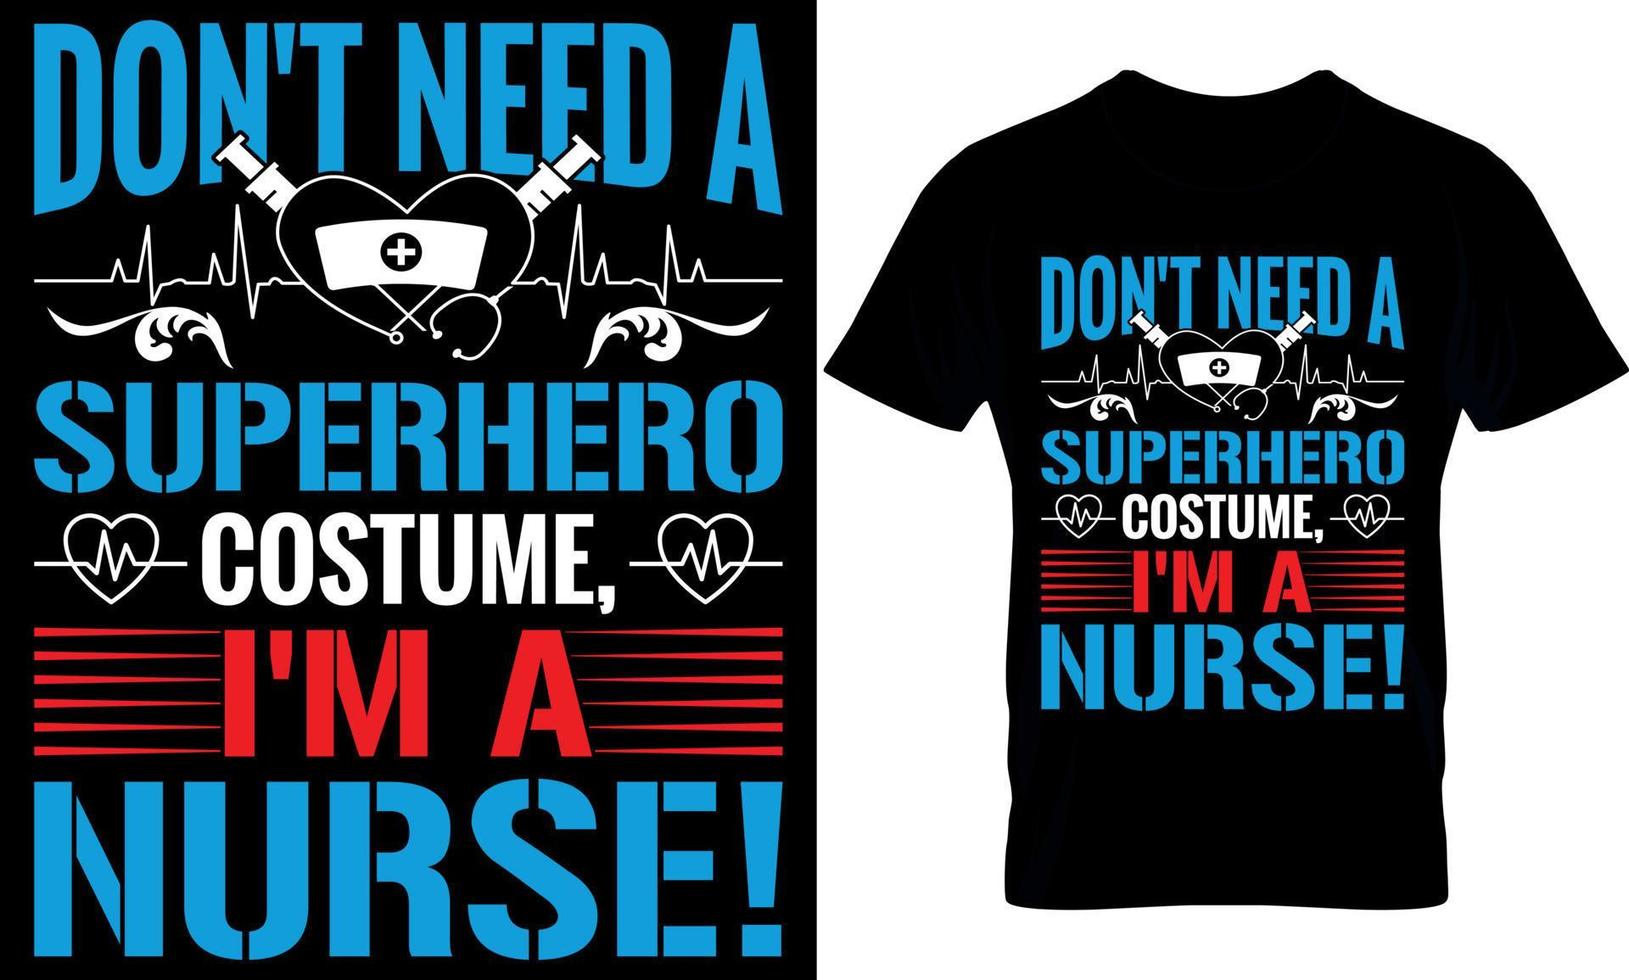 sjuksköterska t-shirt design vektor